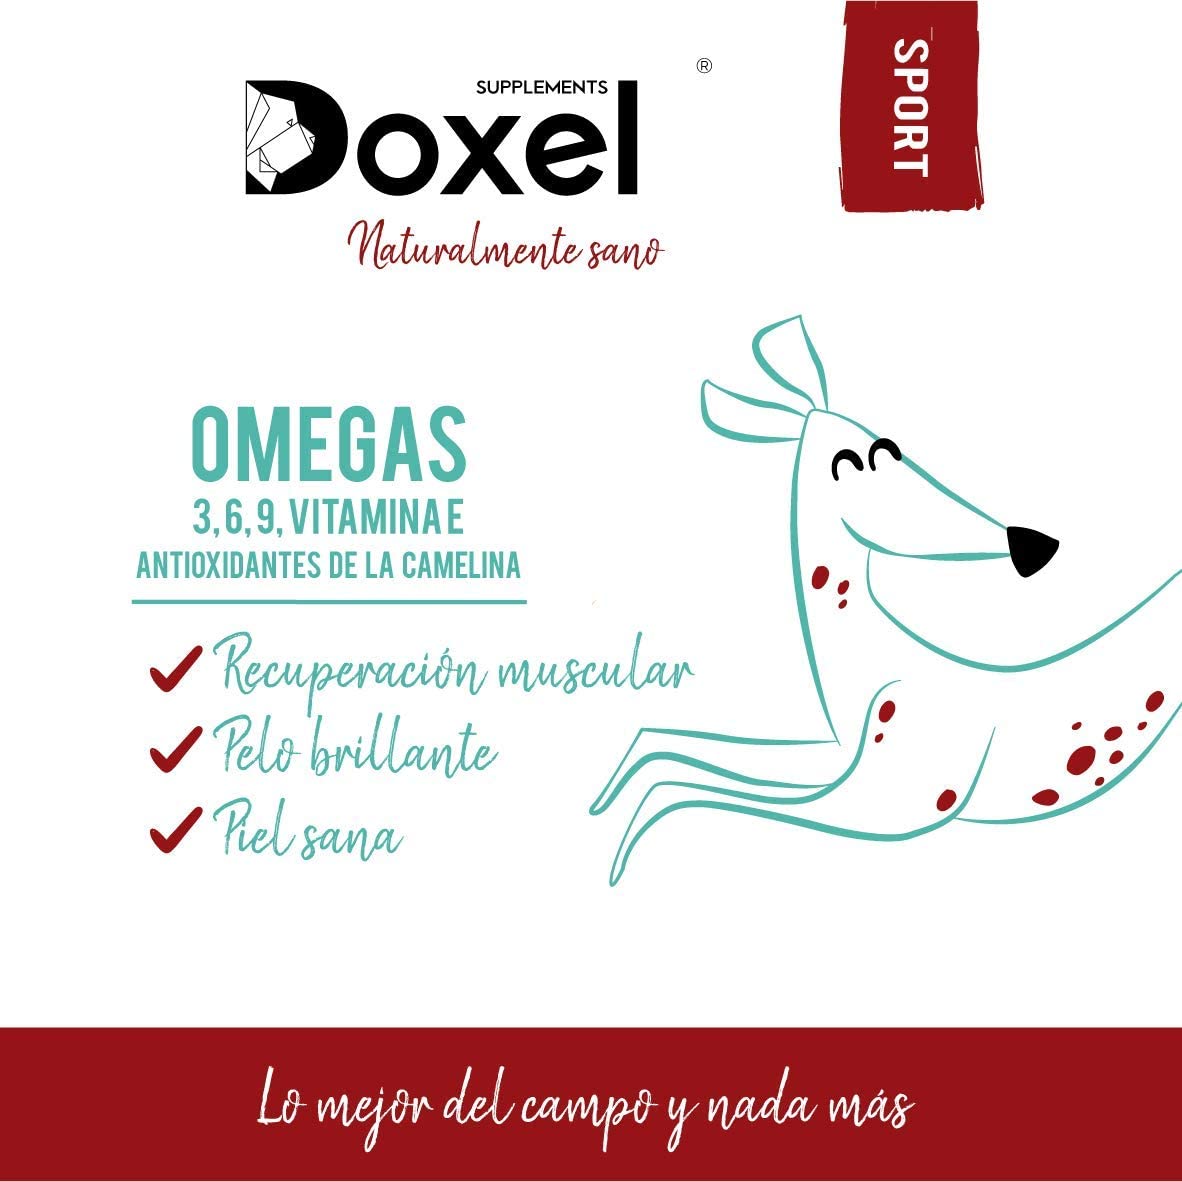  Doxel Sport - 1litro l Aceite para perros | Suplementos naturales nutricionales | Antioxidantes| Recuperación muscular| Articulaciones sanas |Sistema inmunitario reforzado| Canicross| Agility| Mushing 